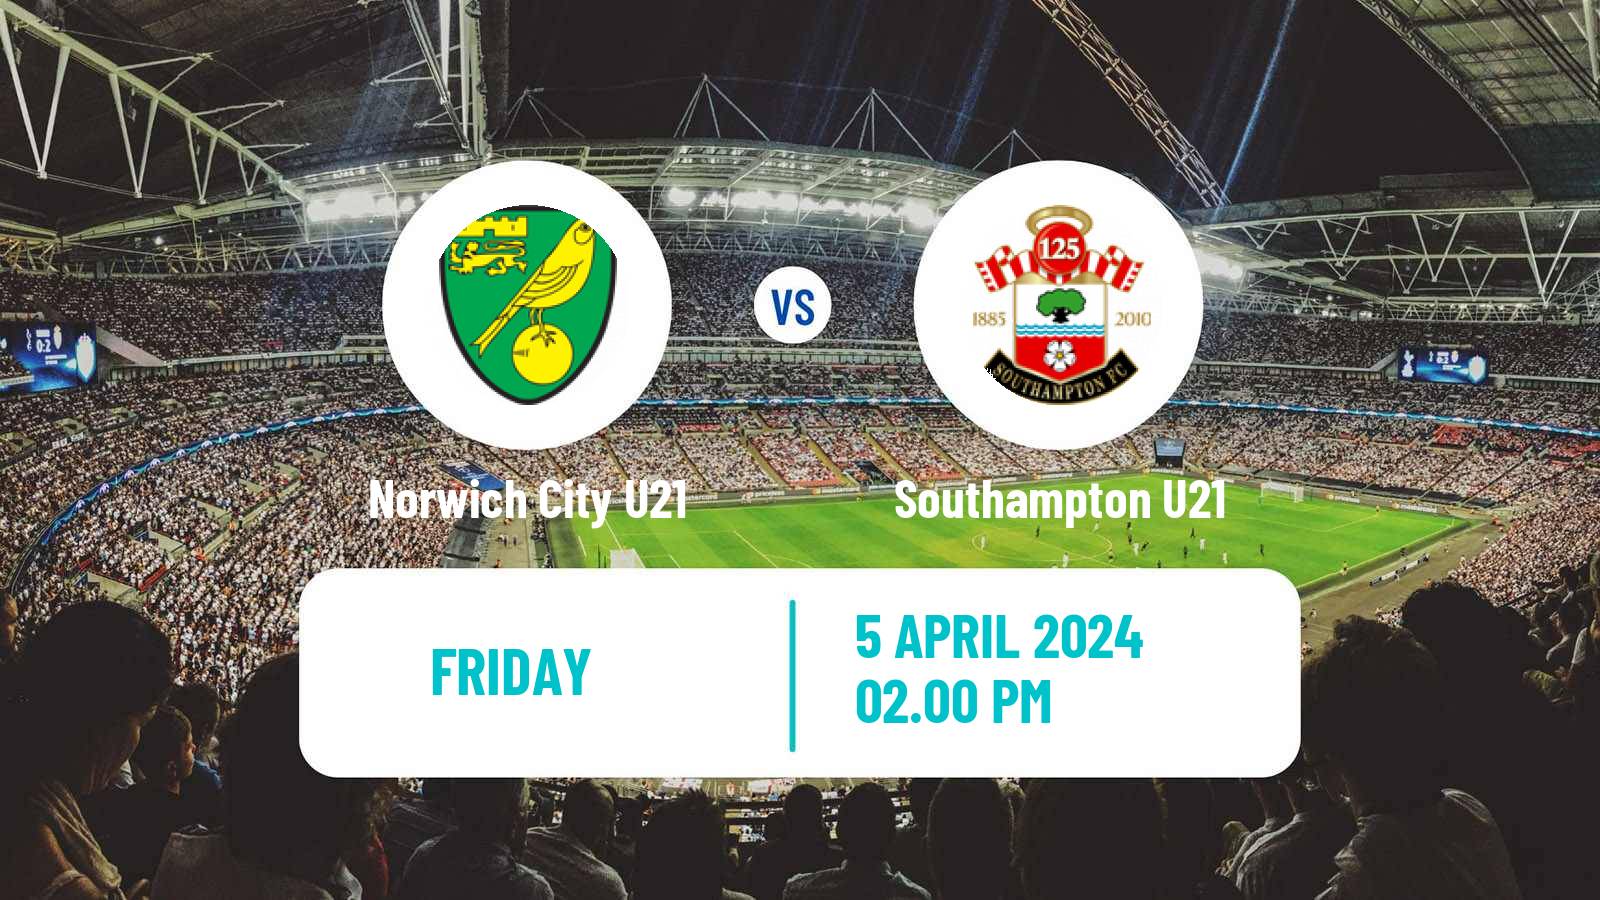 Soccer English Premier League 2 Norwich City U21 - Southampton U21